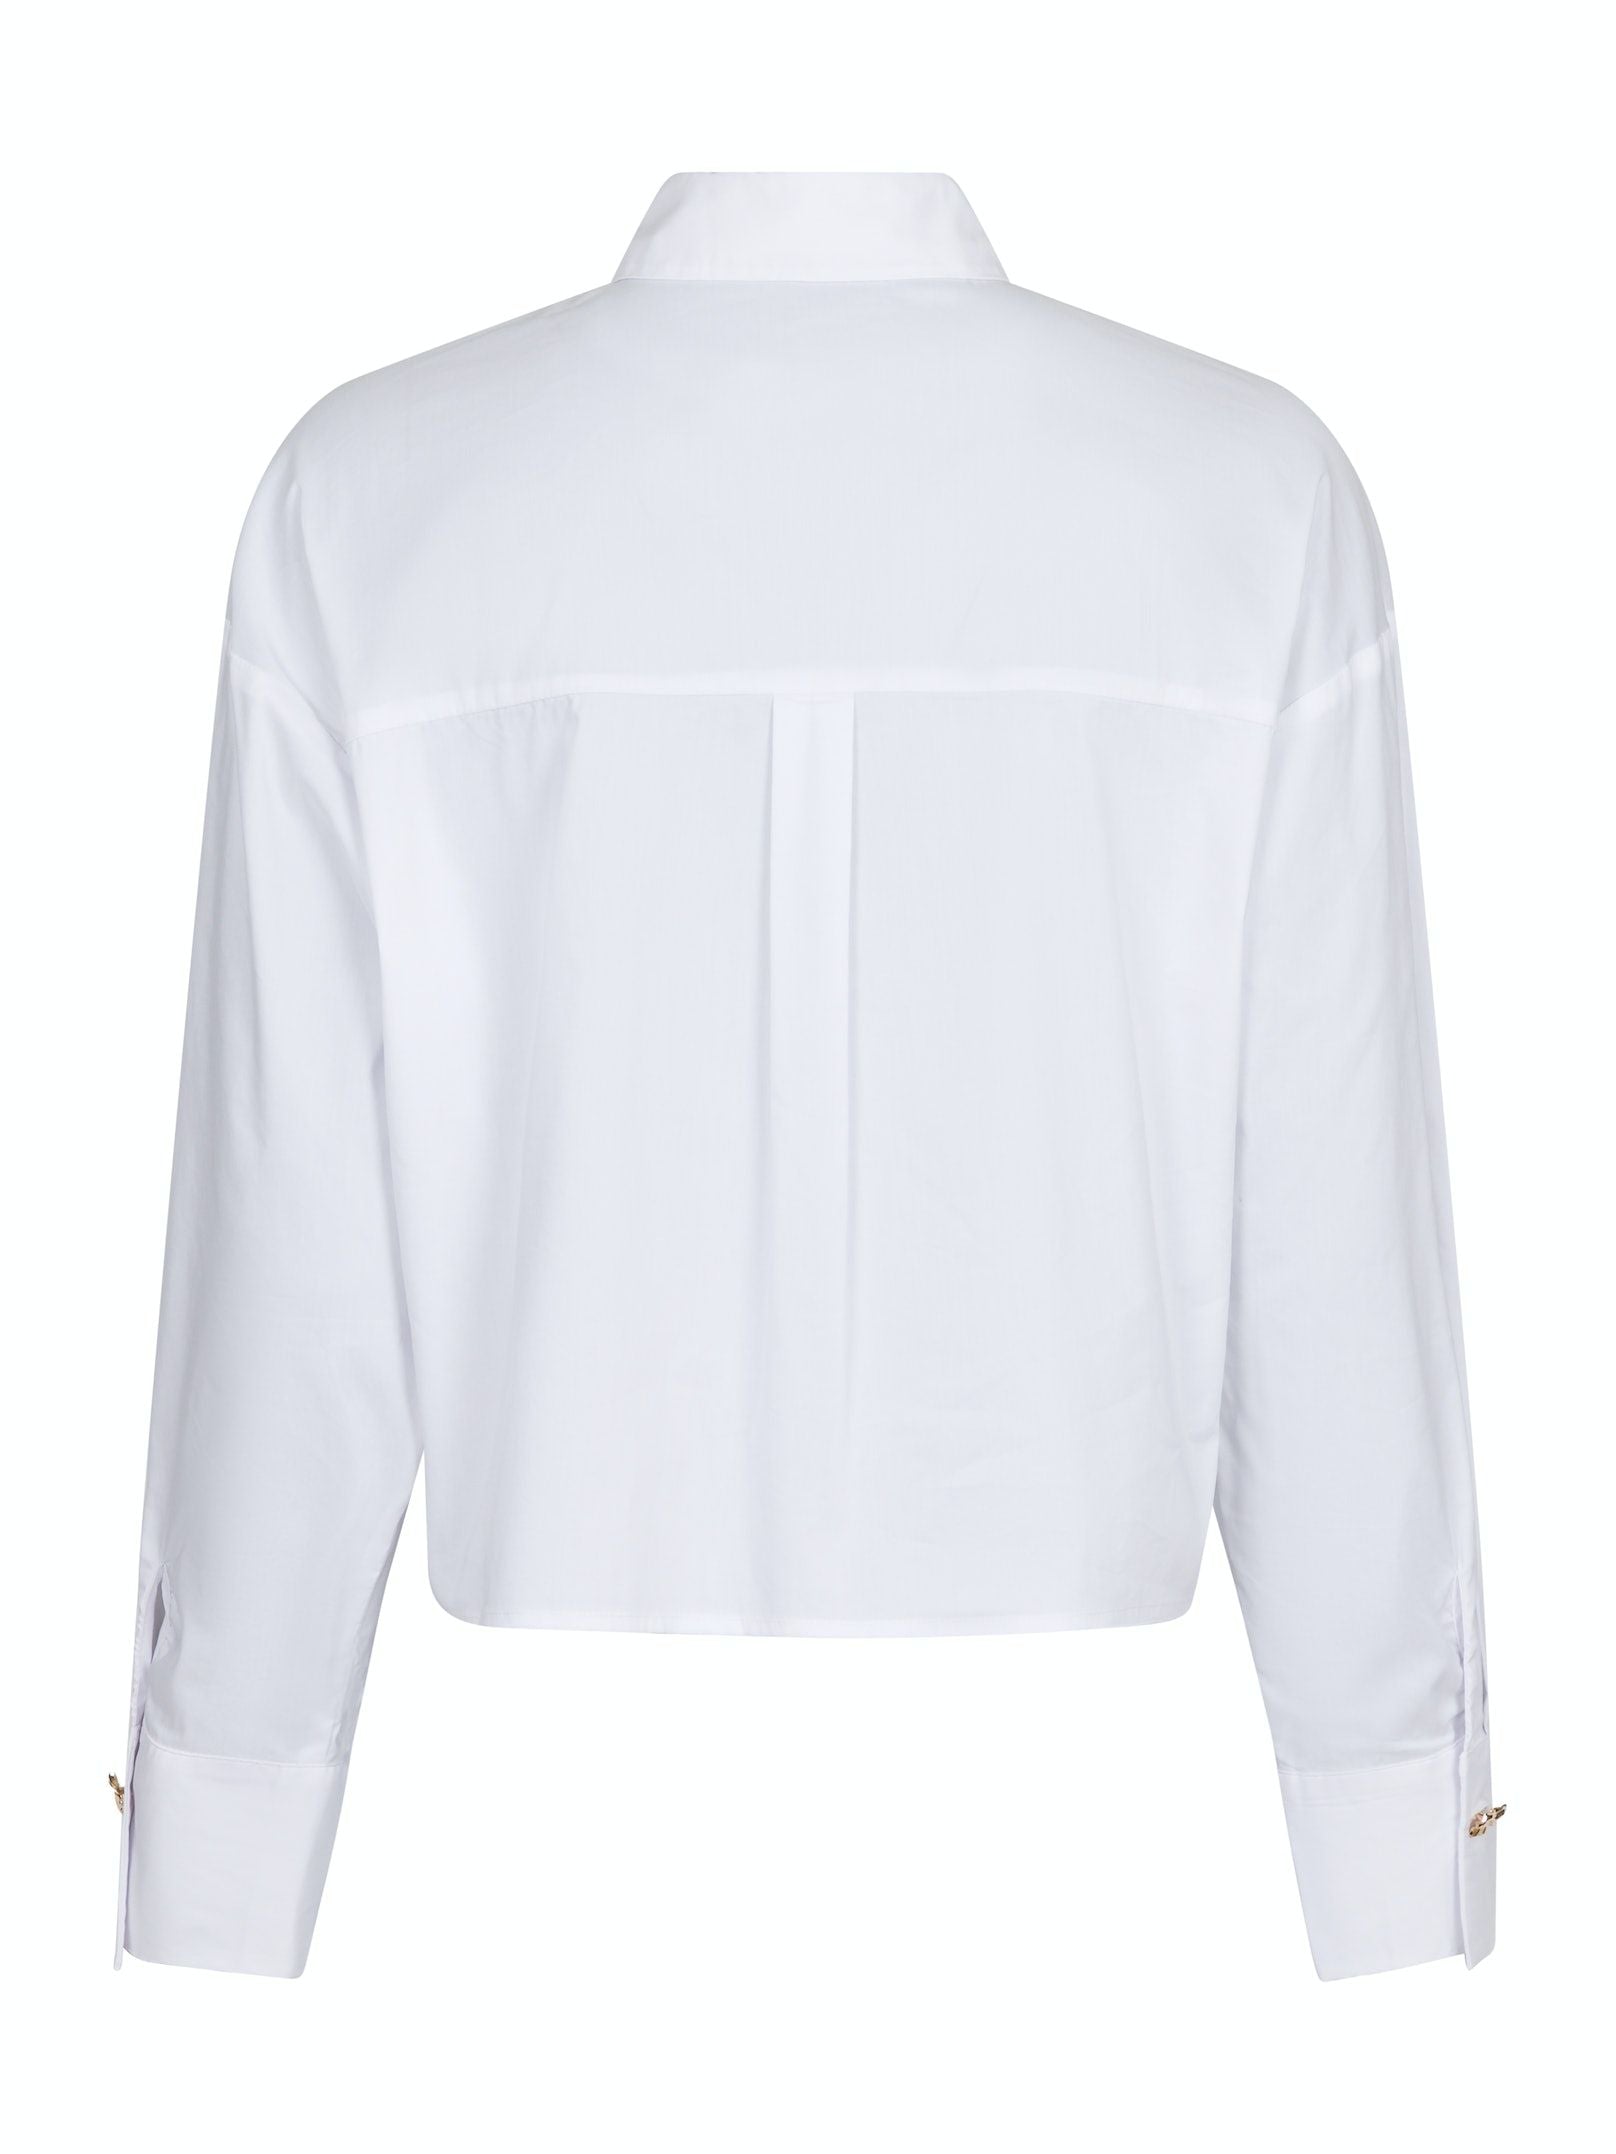 Wisla Poplin Shirt White